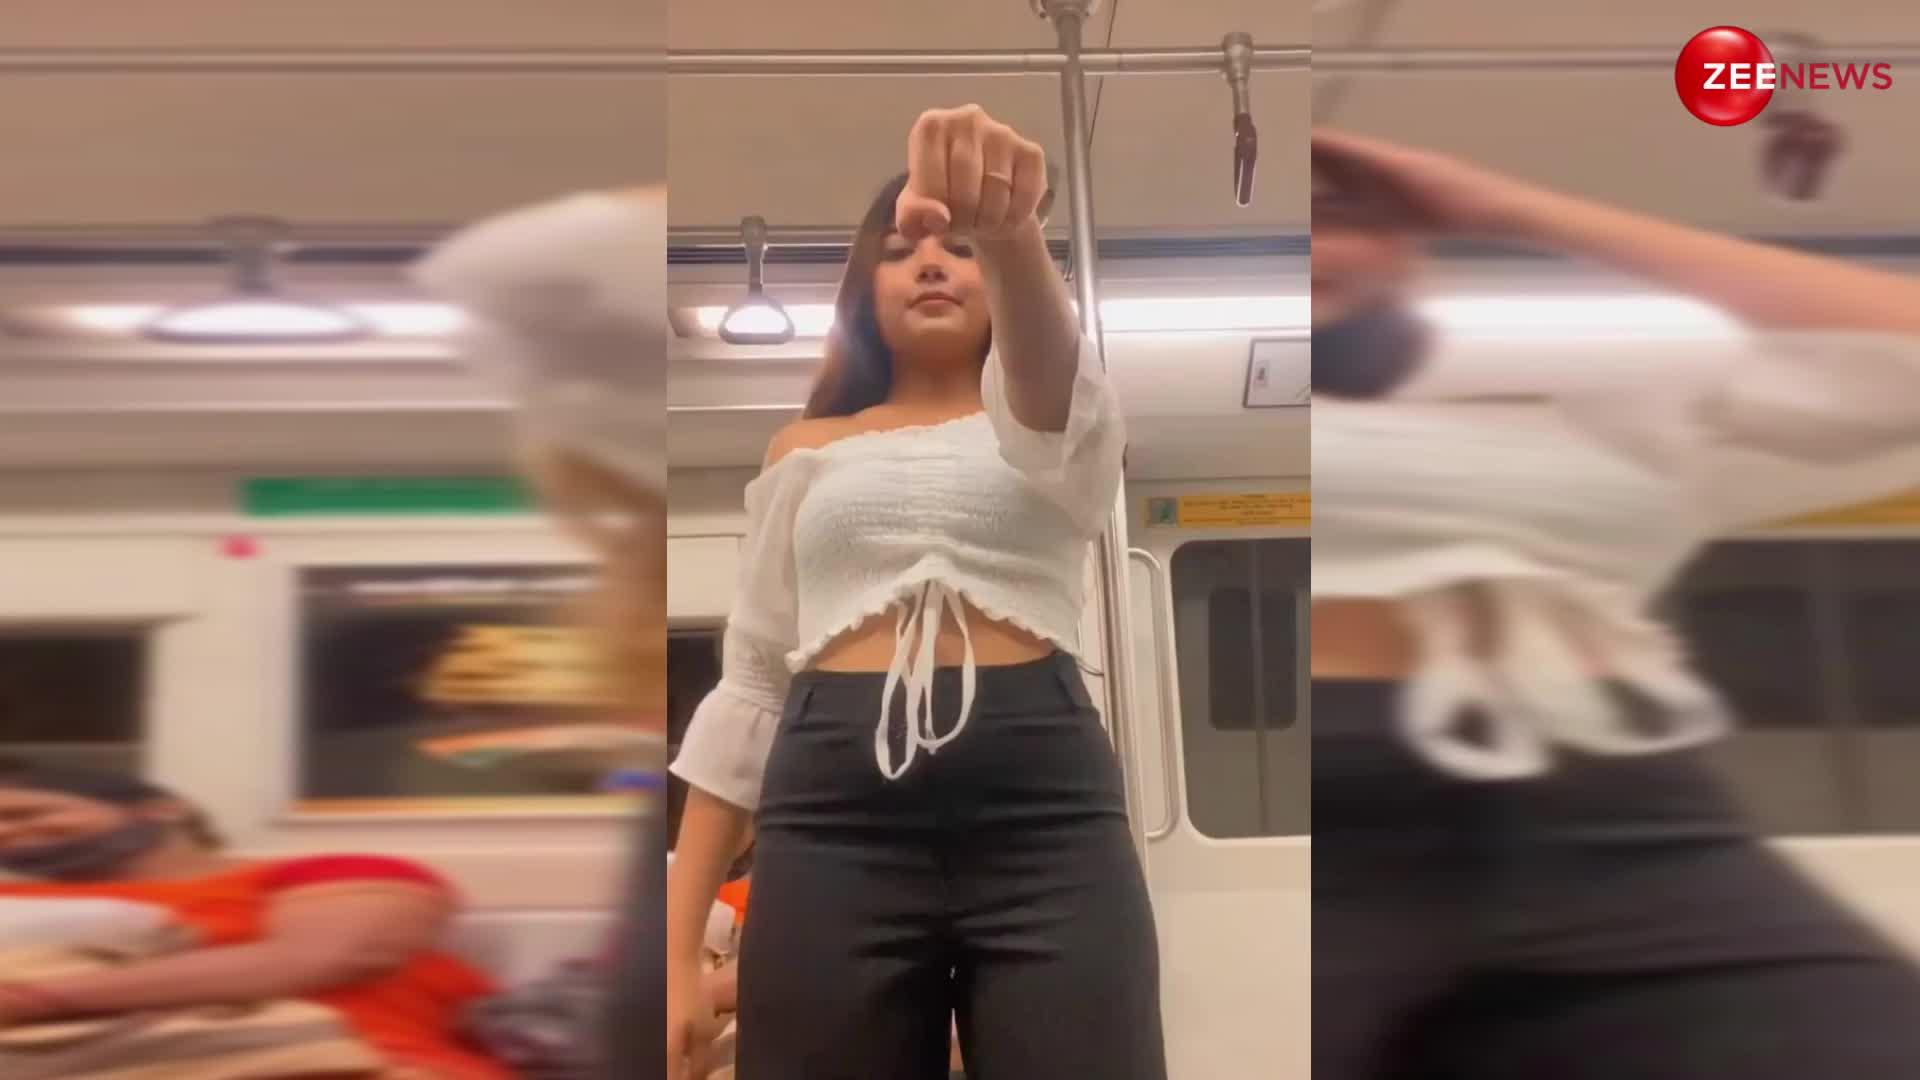 Girl Metro Dance Video: मेट्रो में दीदी ने कैमरा नीचे रख किया ऐसा डांस, पीछे बैठी आंटी की खूब छूटी हंसी